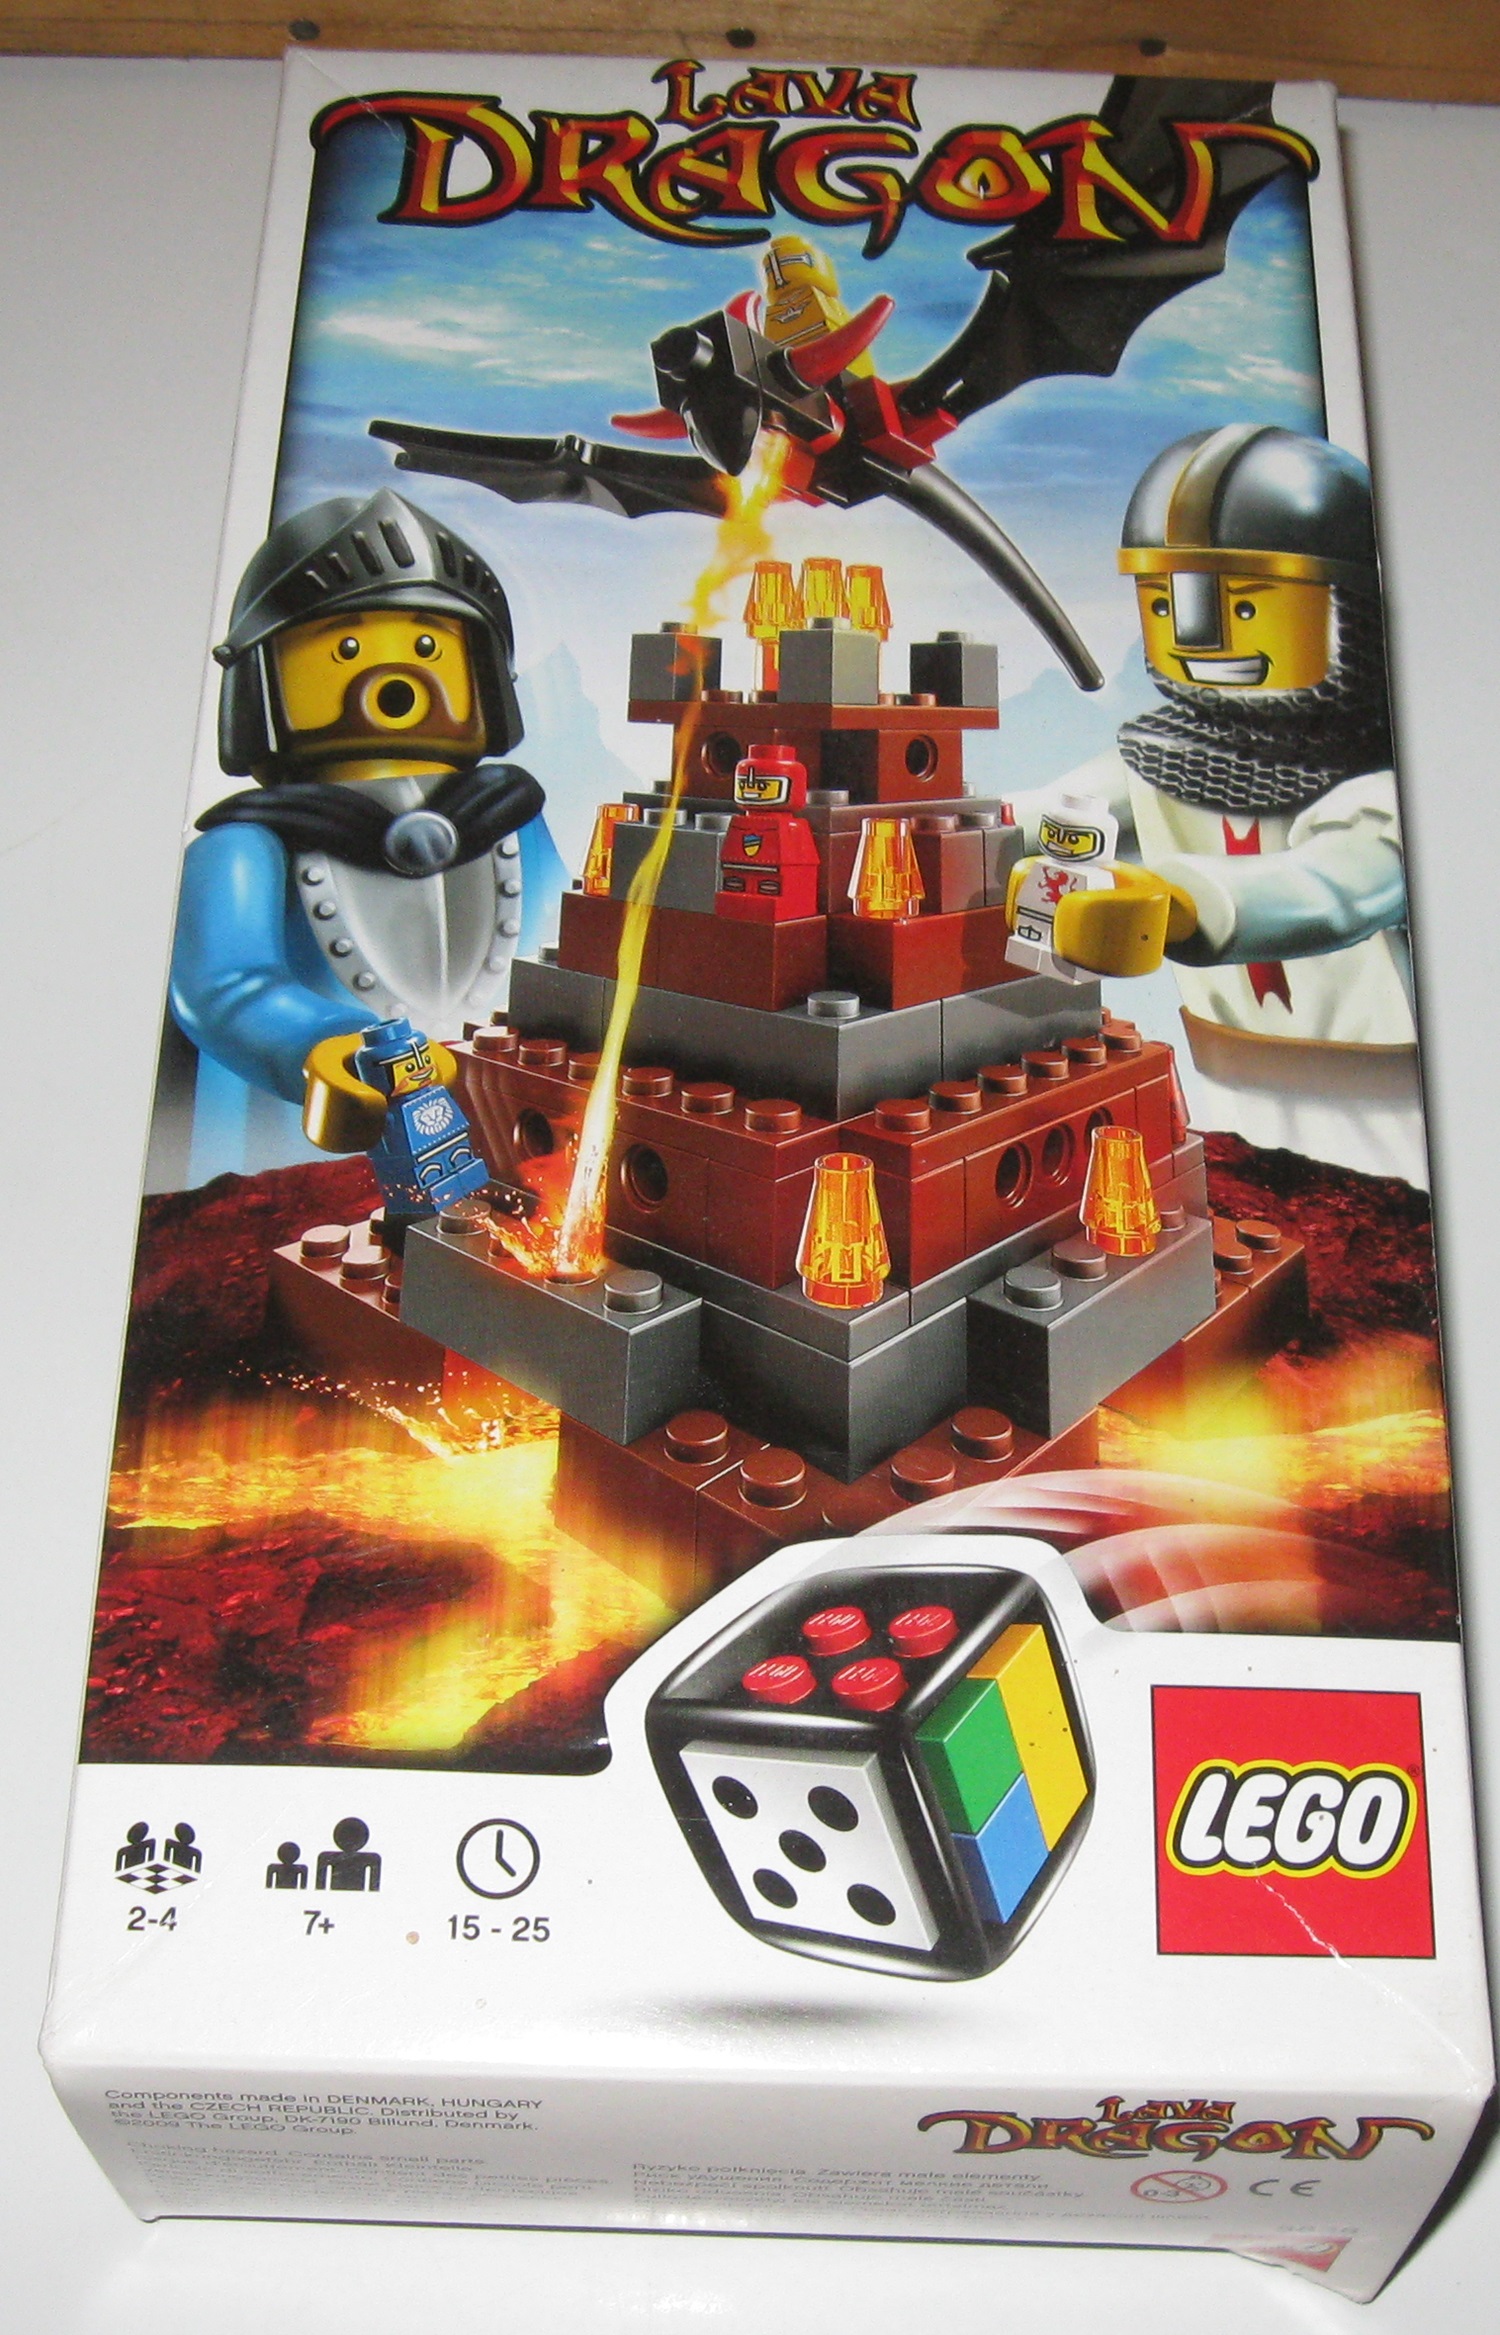 0020 Lego 3838